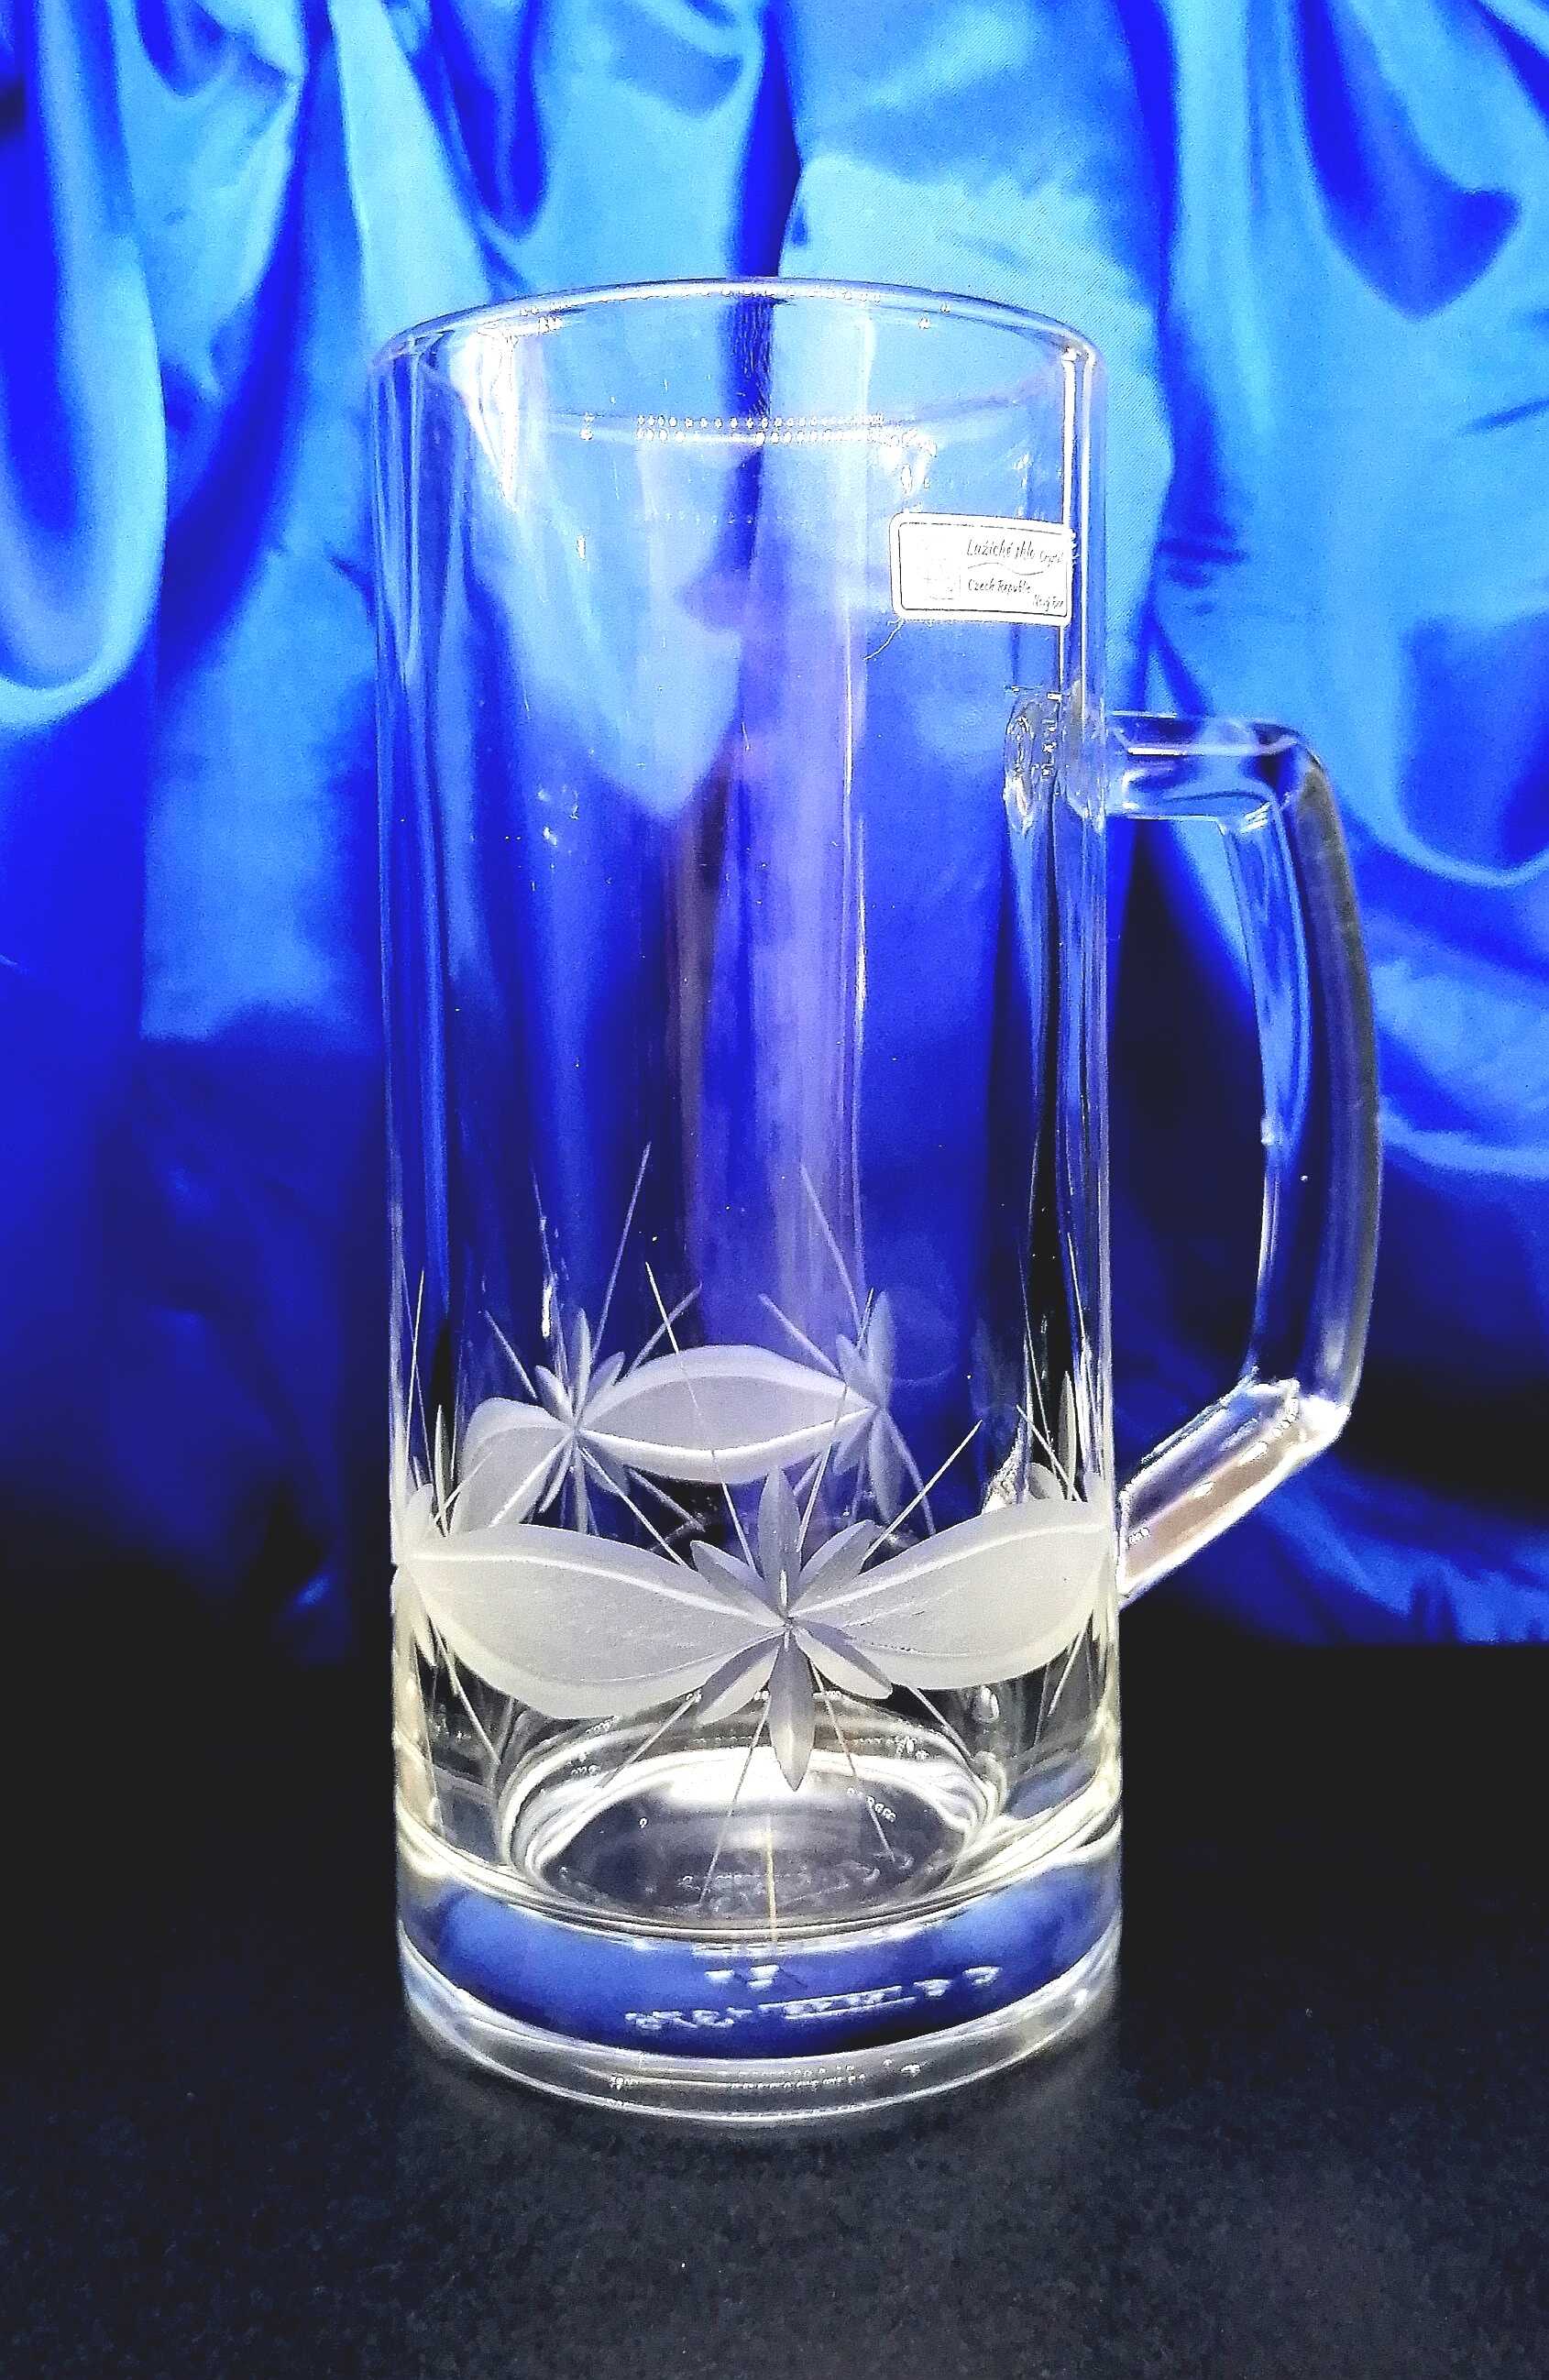 LsG-Crystal Sklenice pivní ručně broušená třetinka dekor Kanta VU-481 330 ml 1 Ks.